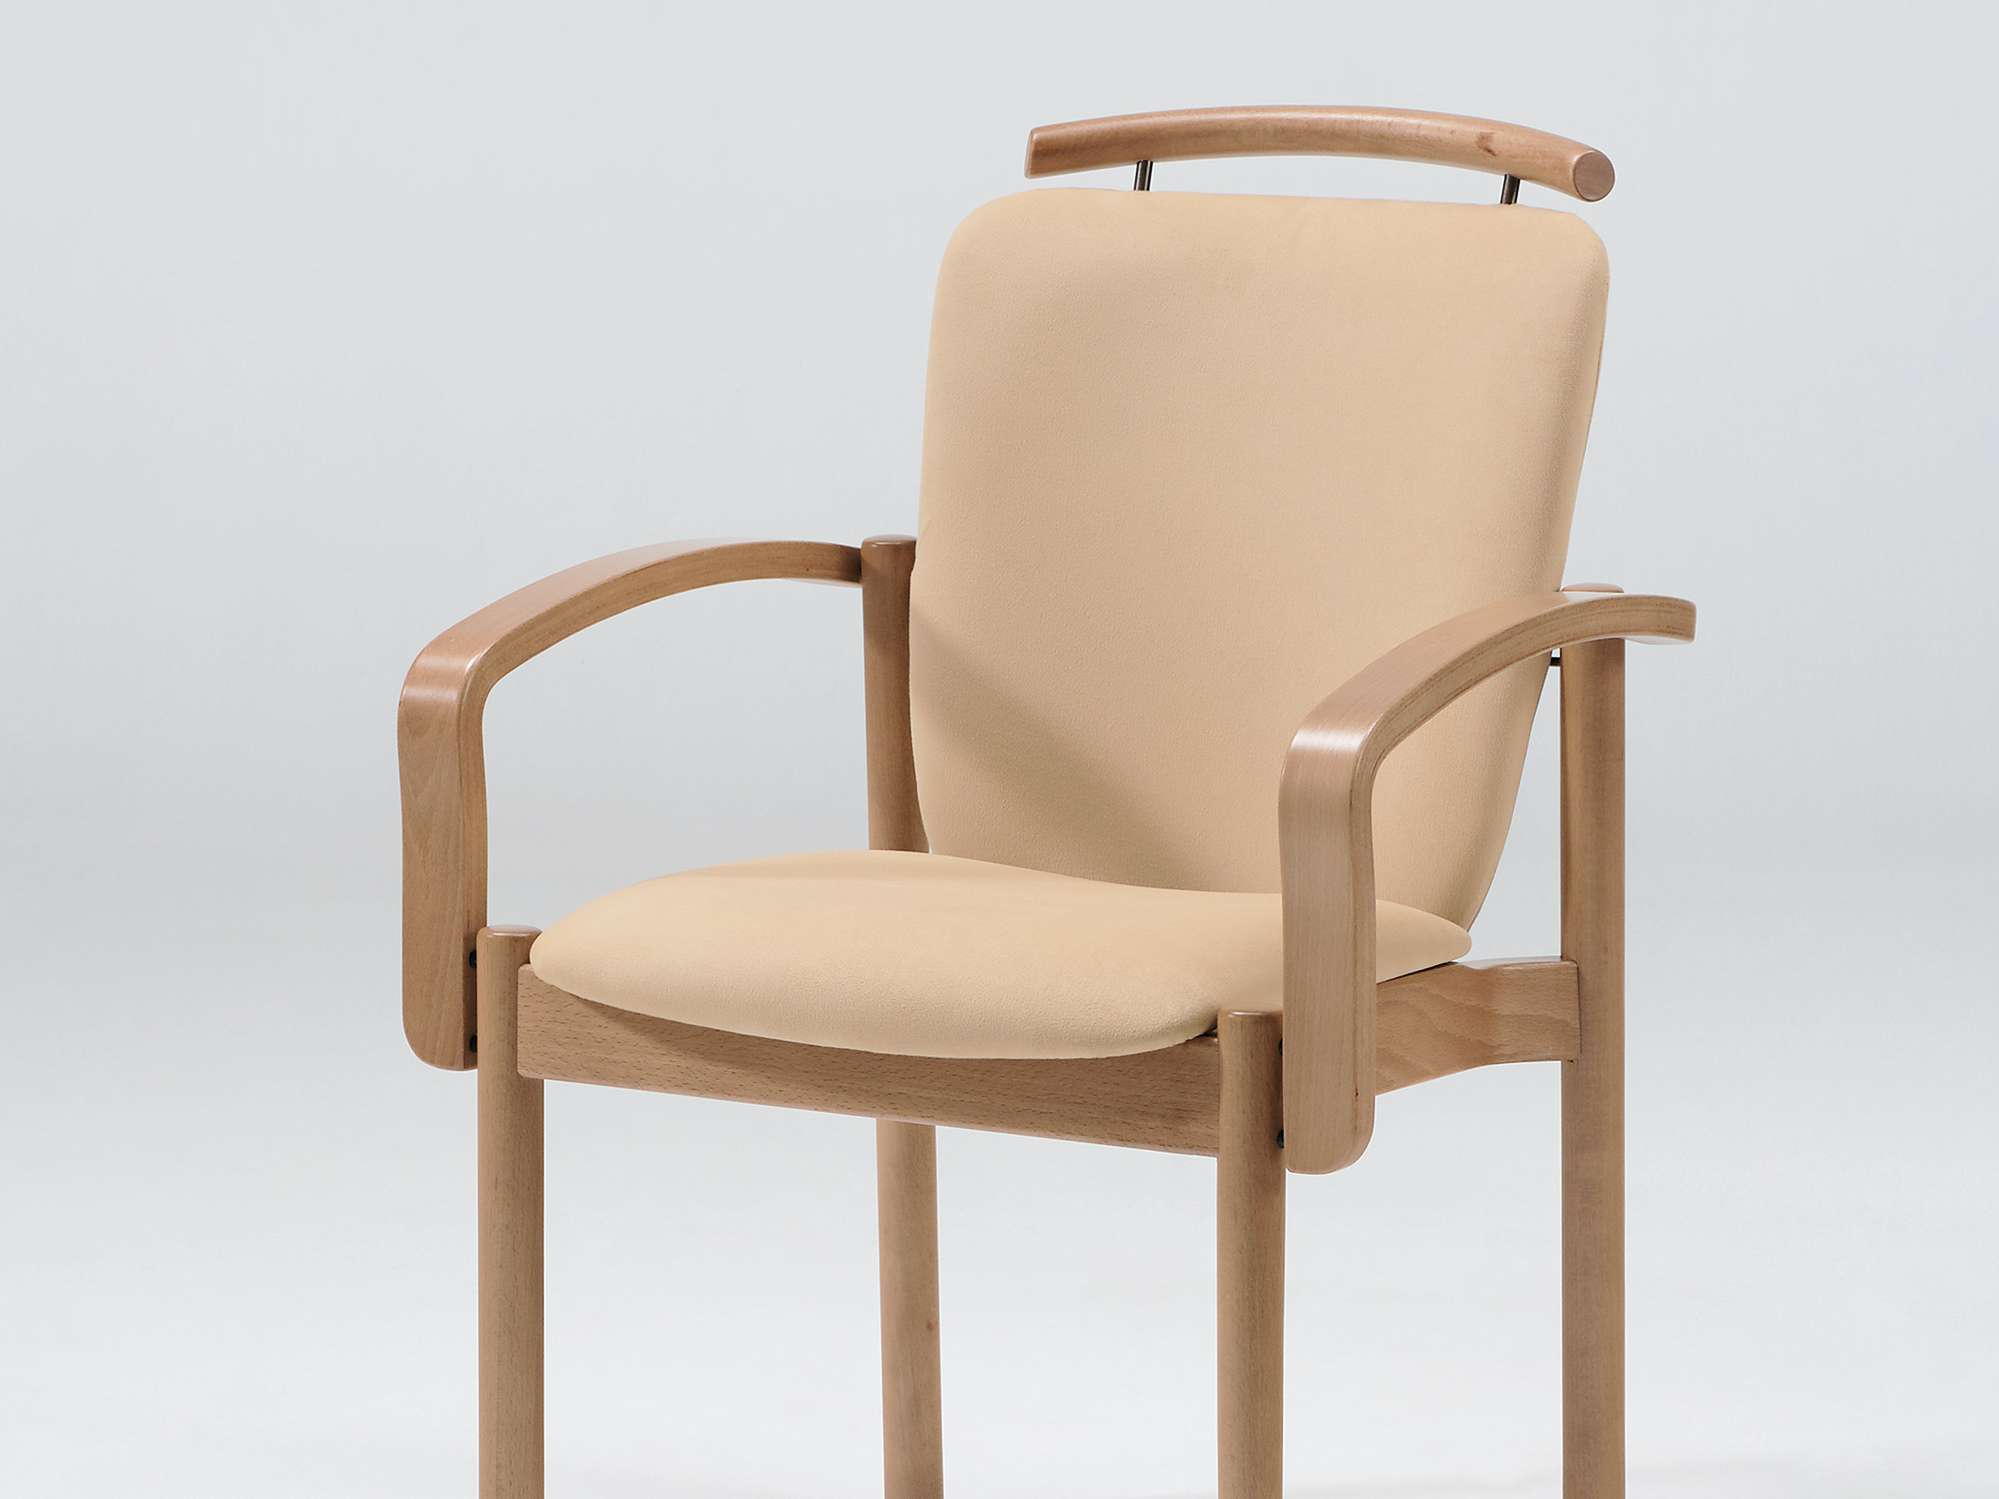 Optimo-tuoli päällekkäin pinottavana, käsinojilla ja nostokahvalla varustettuna mallina